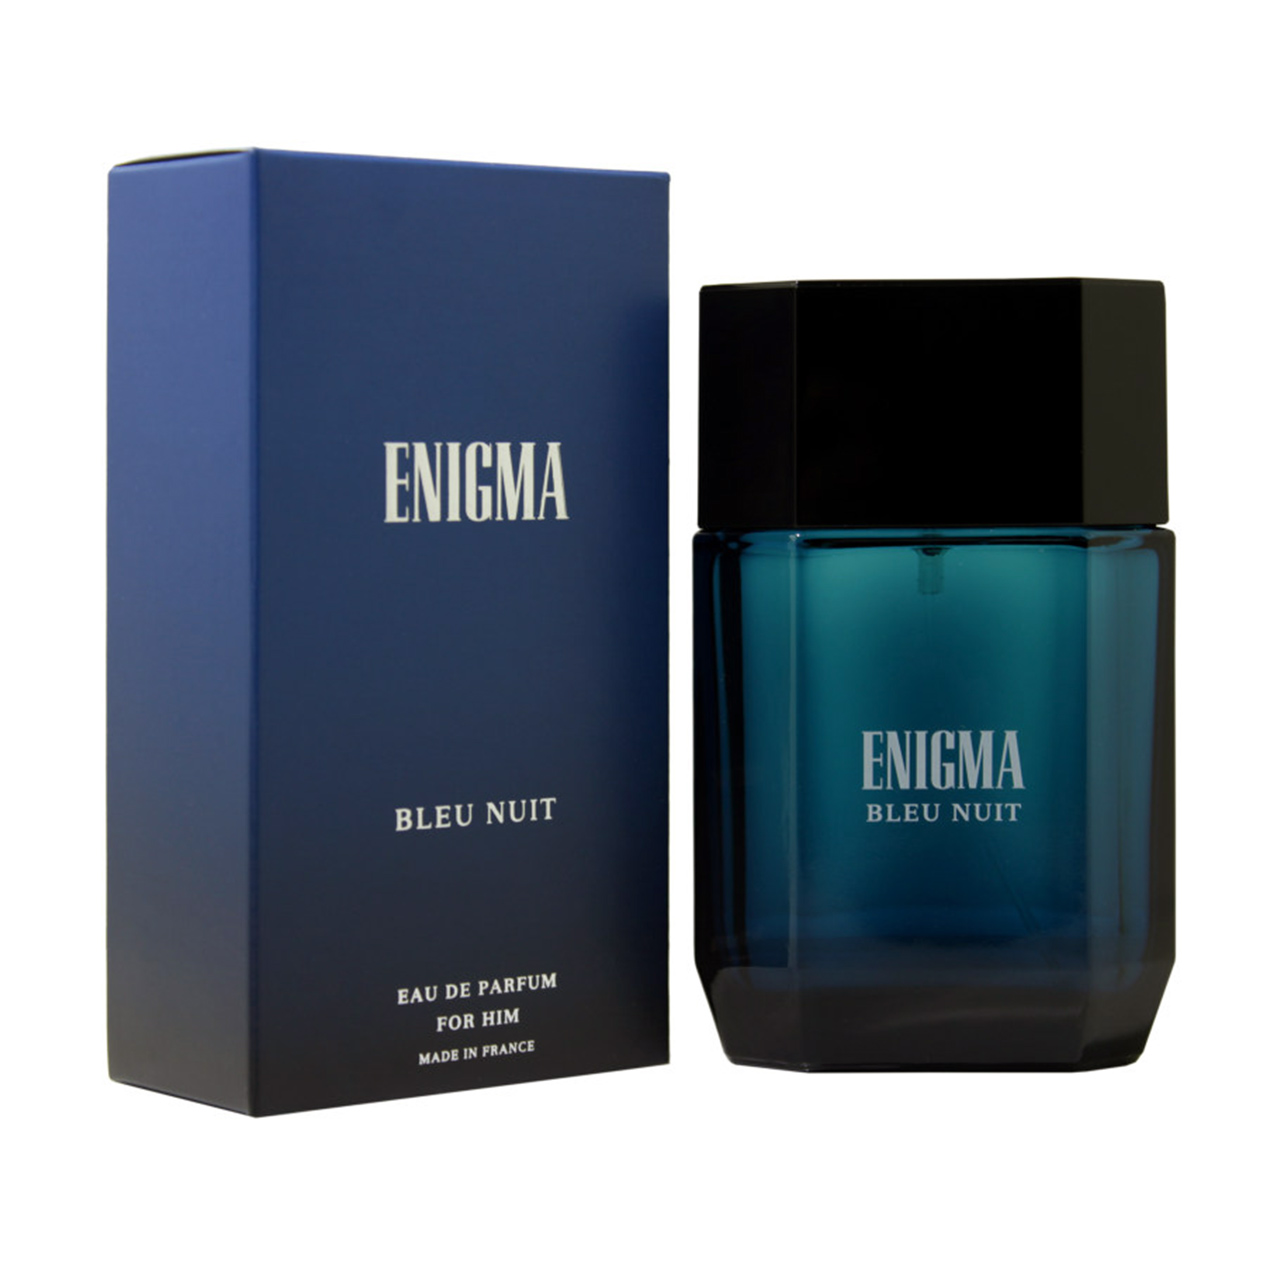 ادو پرفیوم مردانه ی آرت اند پرفیوم مدل Enigma Bleu Nuit